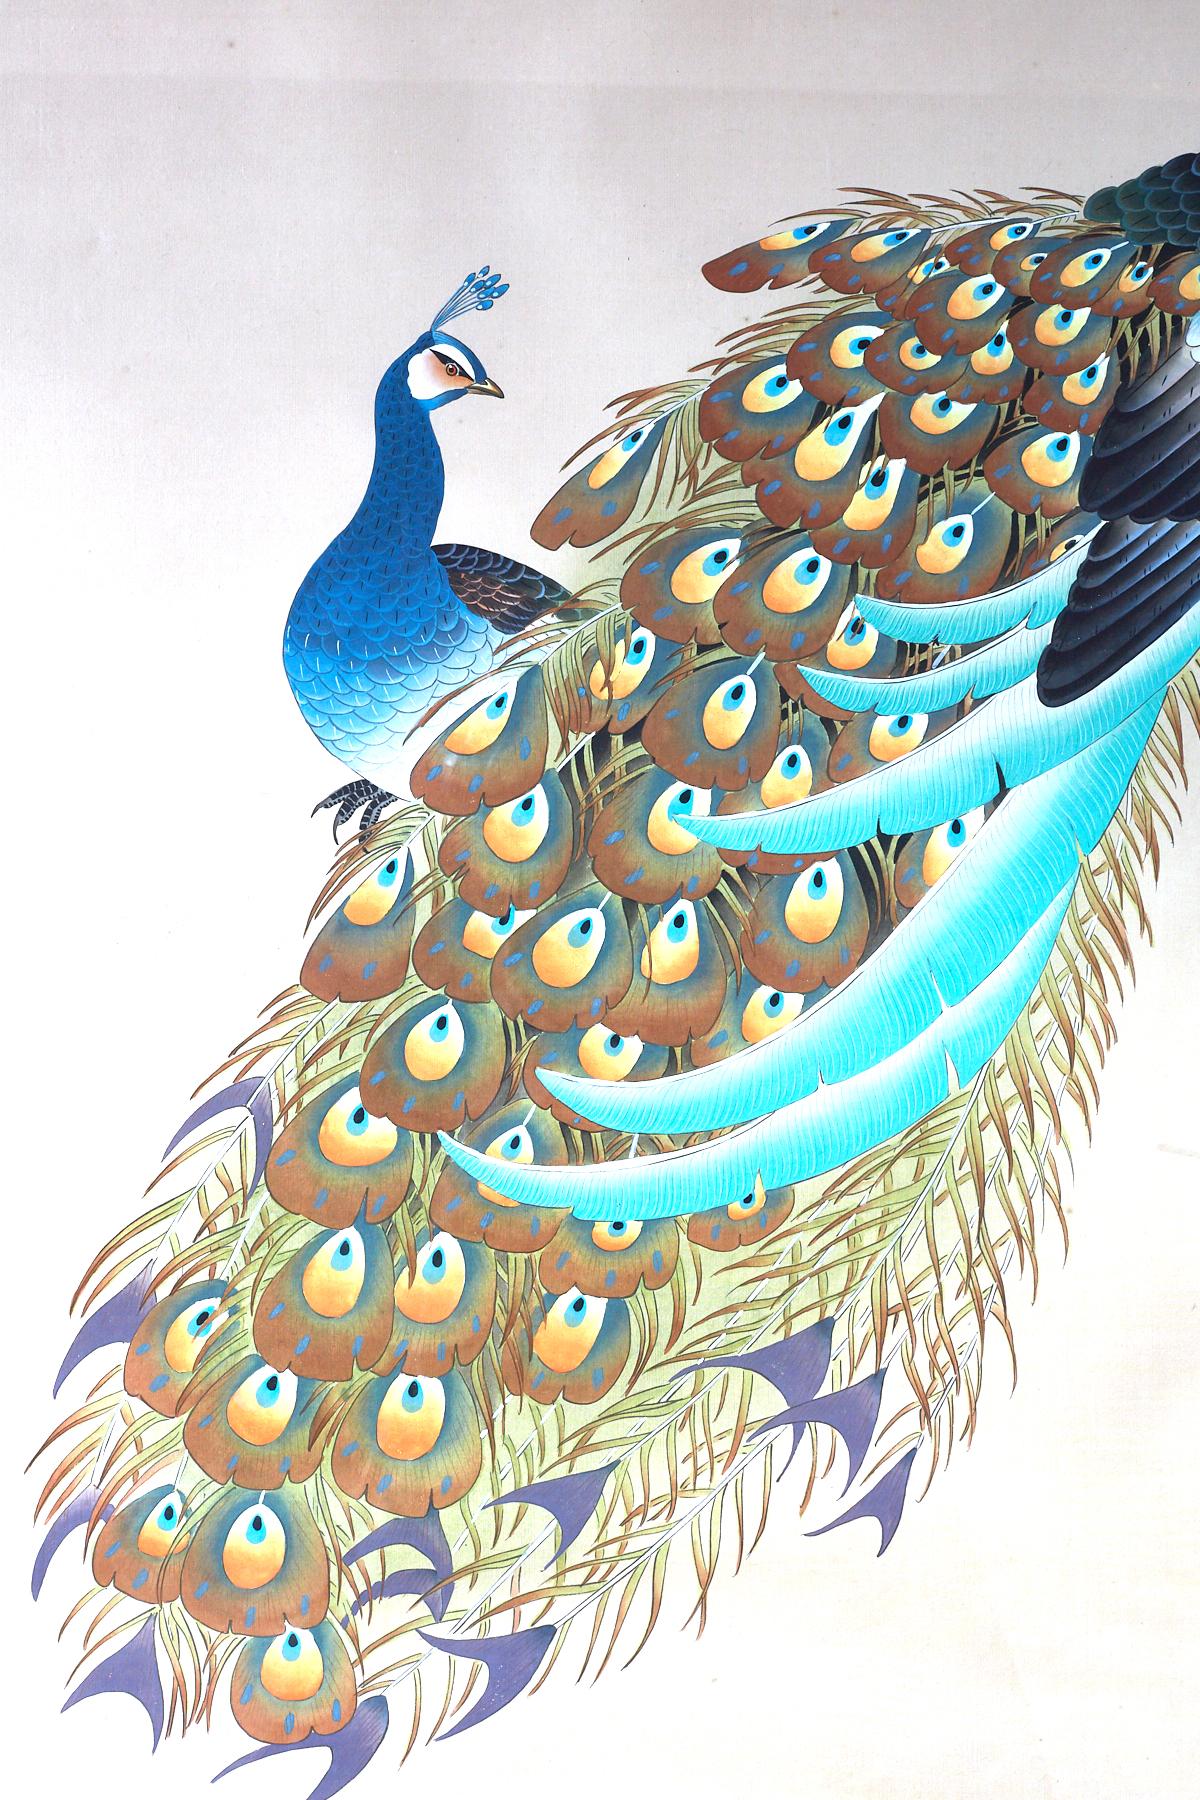 Bunte japanische Tinte und Farbe auf Seide Showa Malerei eines Paares von Pfauen. Kräftige Farben und schöne Details mit einer Unterschrift und einem Siegel auf der rechten Seite unten. Gerahmt in einem weißen Rahmen aus der Jahrhundertmitte hinter